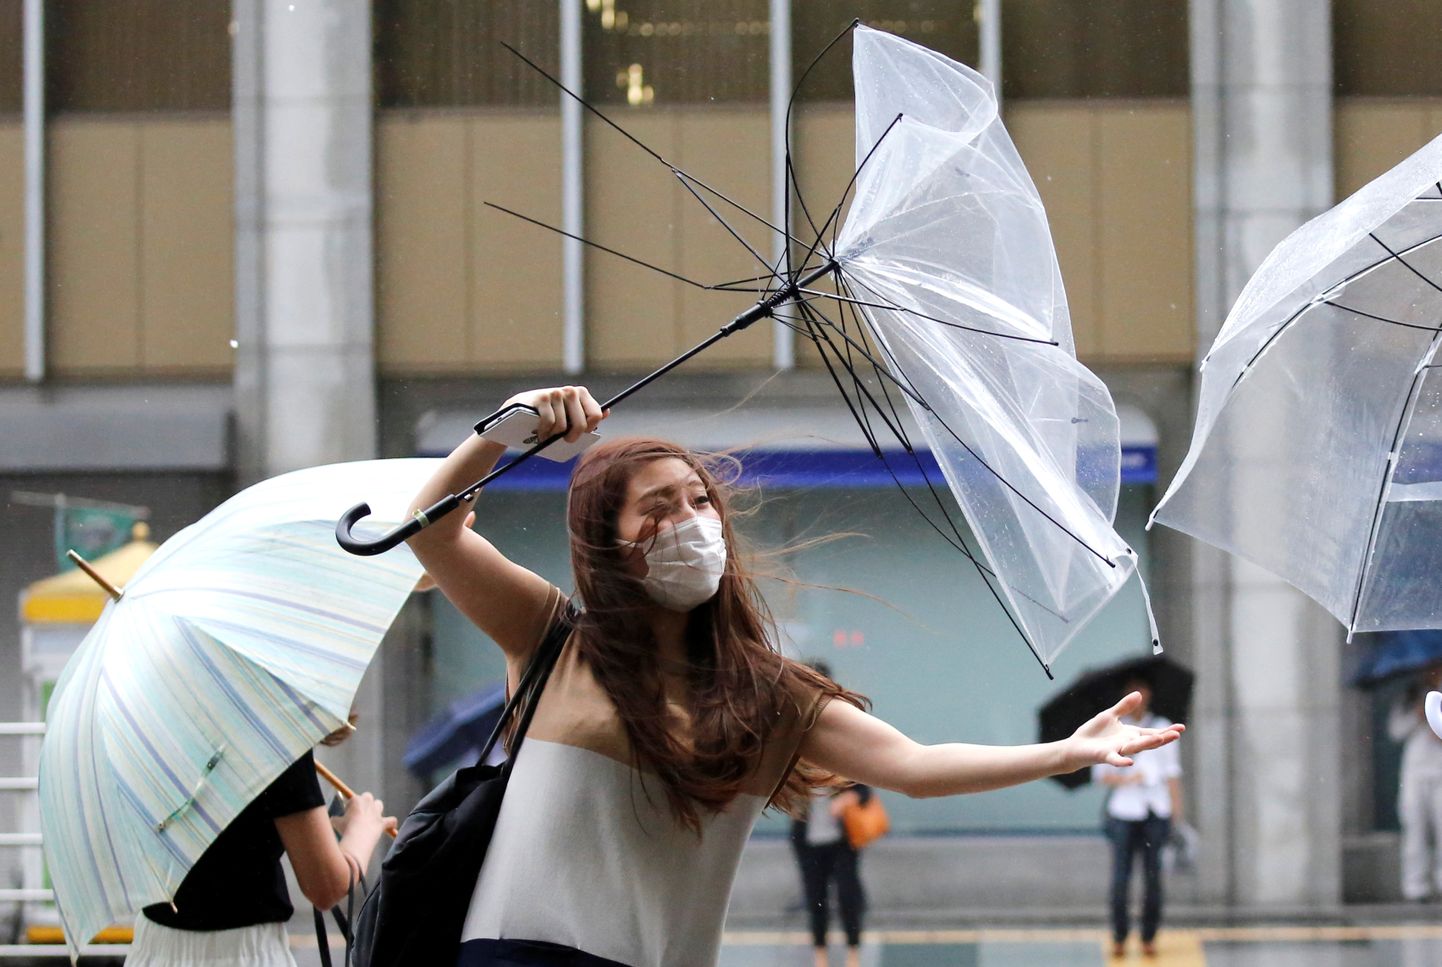 Jaapani pealinna poole liikuvast taifuunist tingitud tugev tuul vihmavarje lõhkumas.